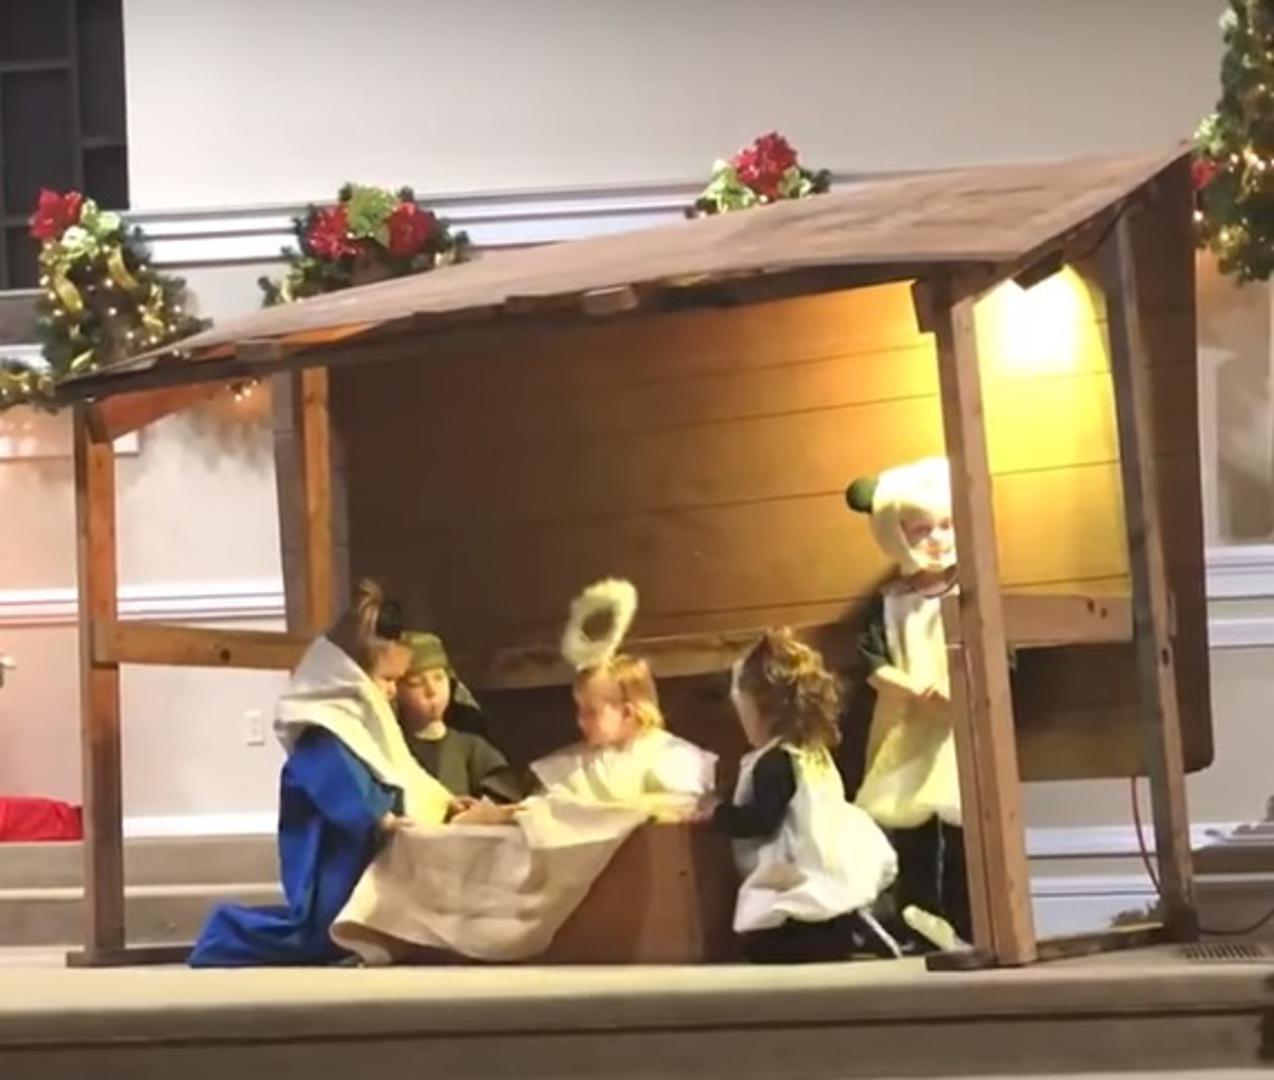 Naime, djeca su sudjelovala u prikazu jaslica. Bili su tu Josip, Marija, mali Isus.. 